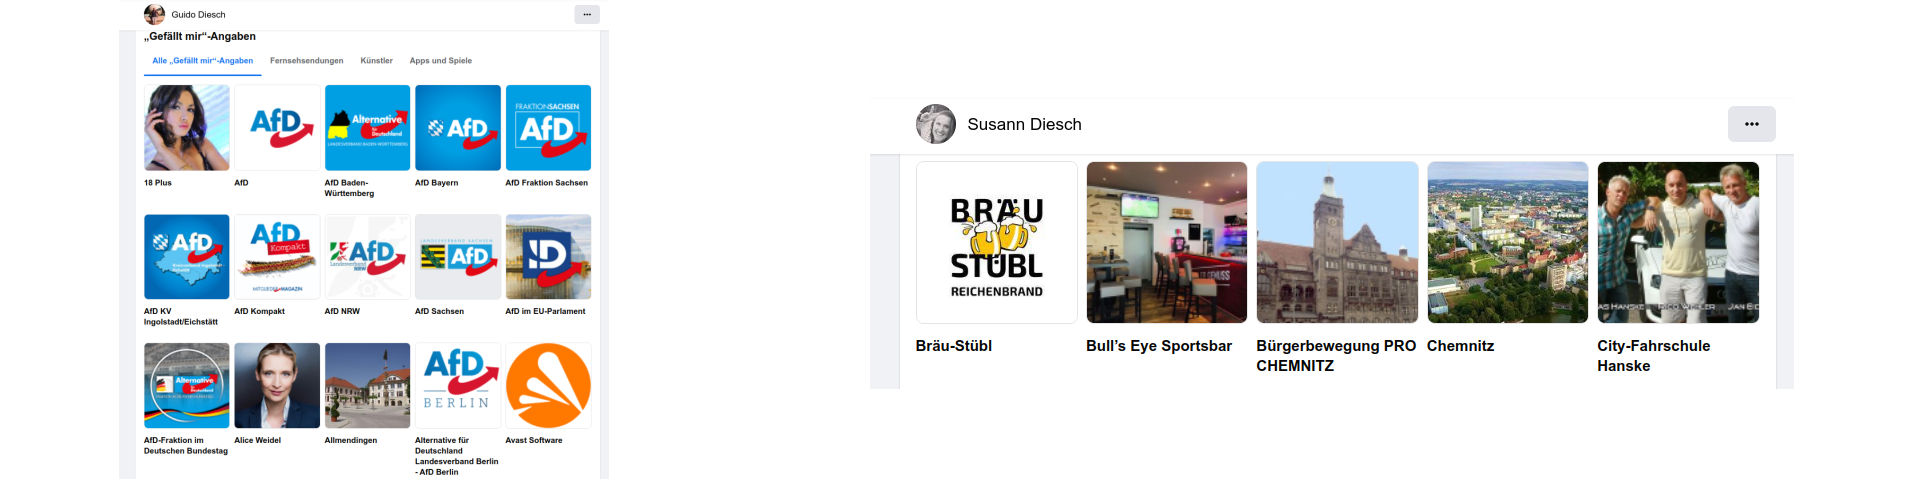 Facebook-Aktivitäten der Pro-Chemnitz- und AfD-Fans Susann und Guido Diesch